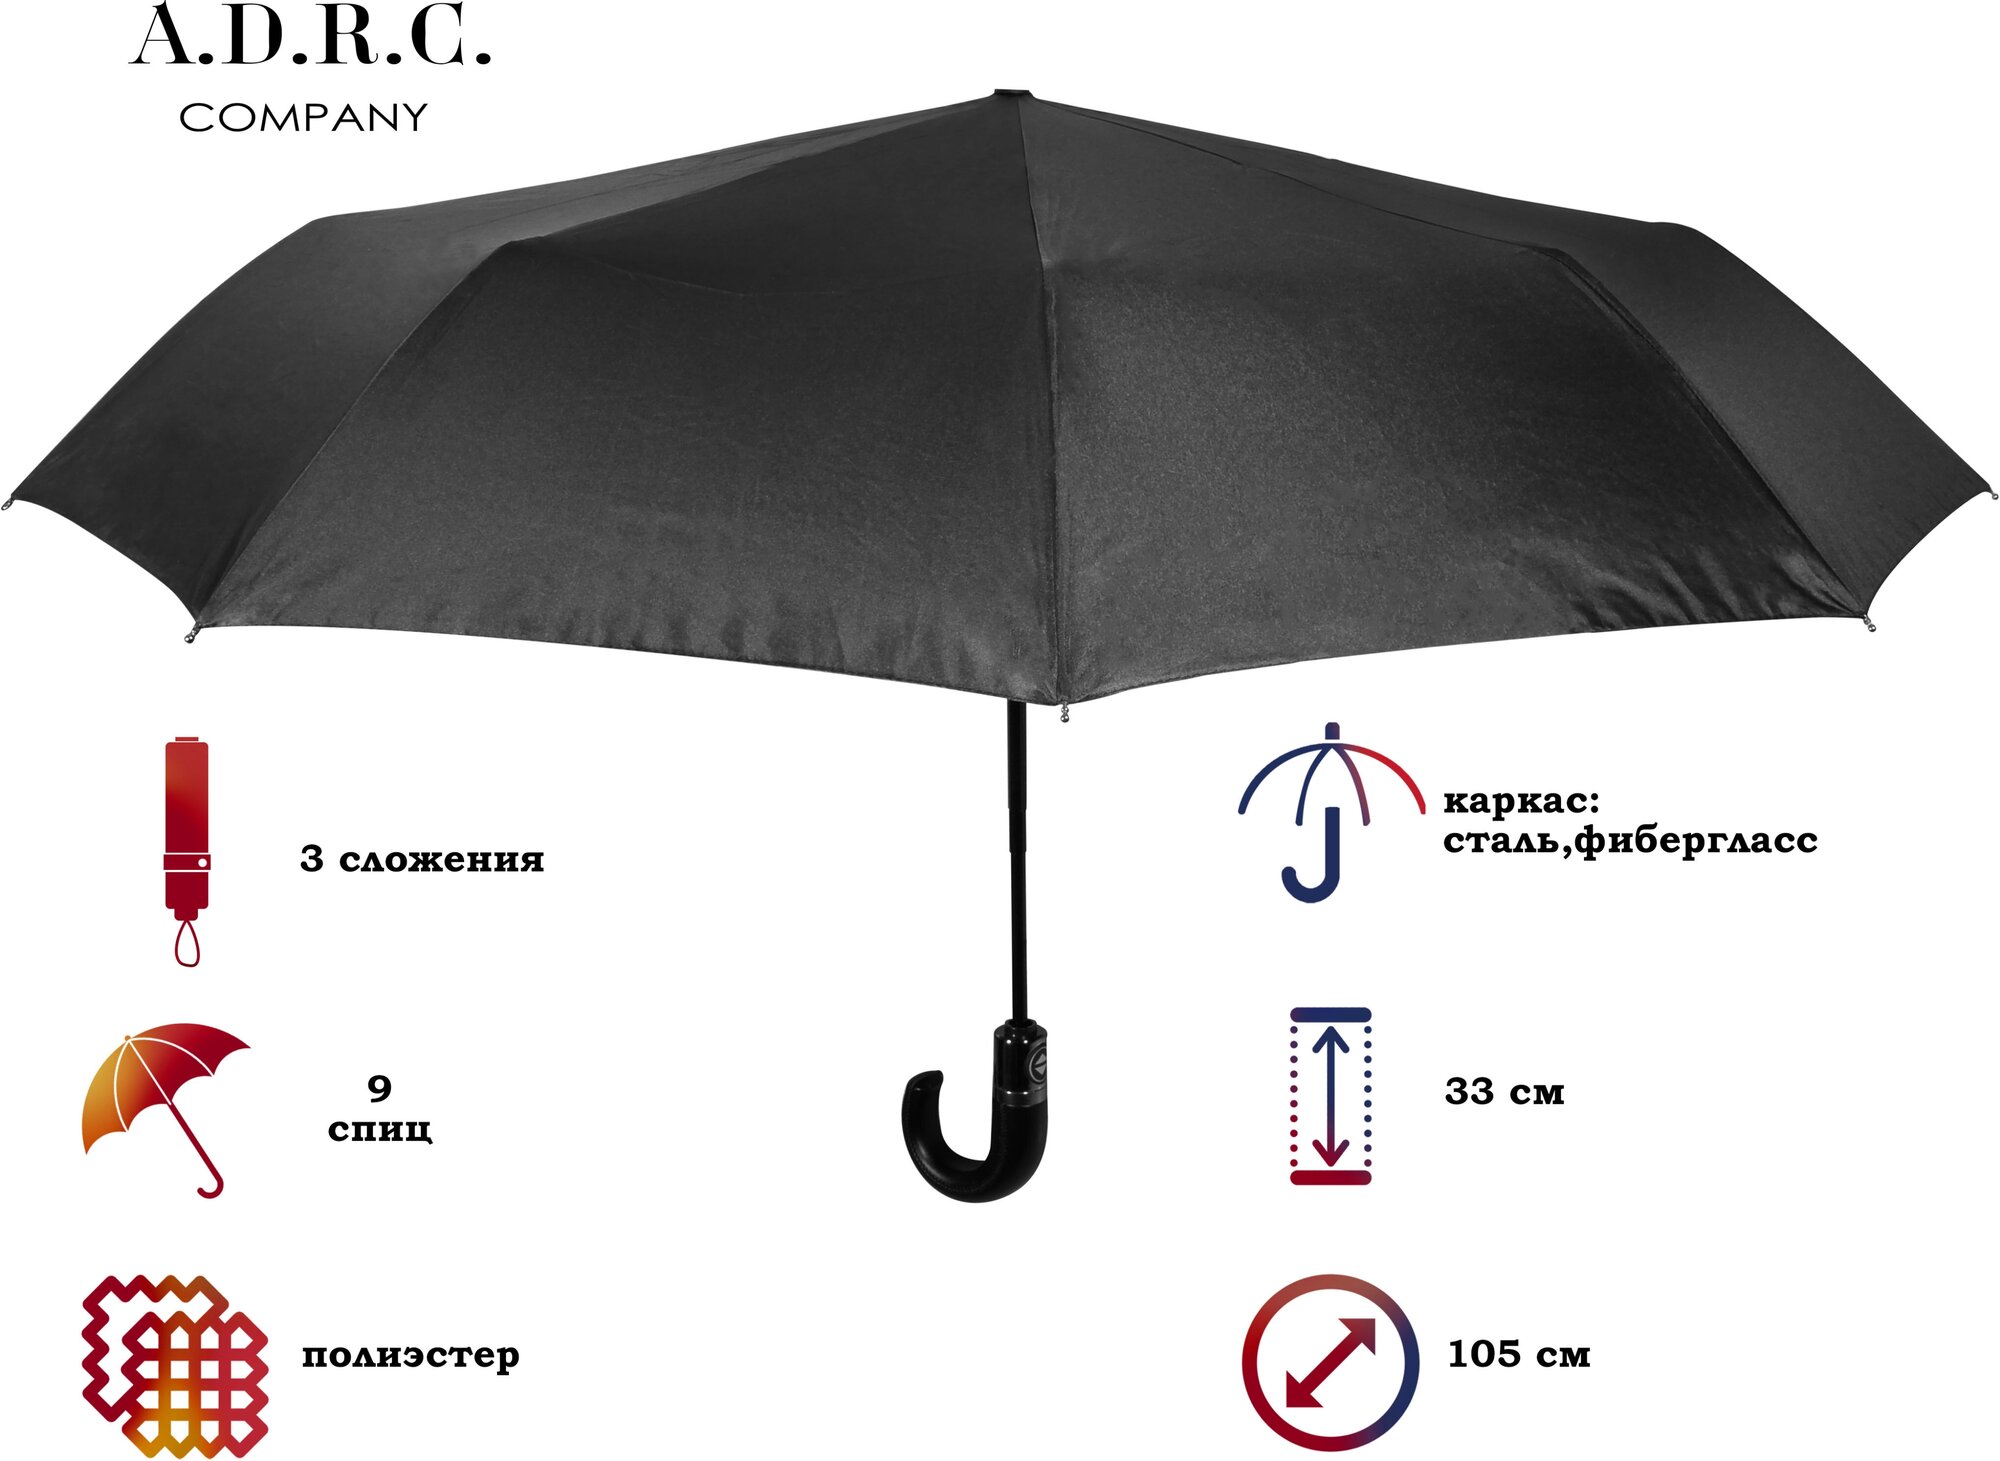 Мини-зонт A.D.R.C Company